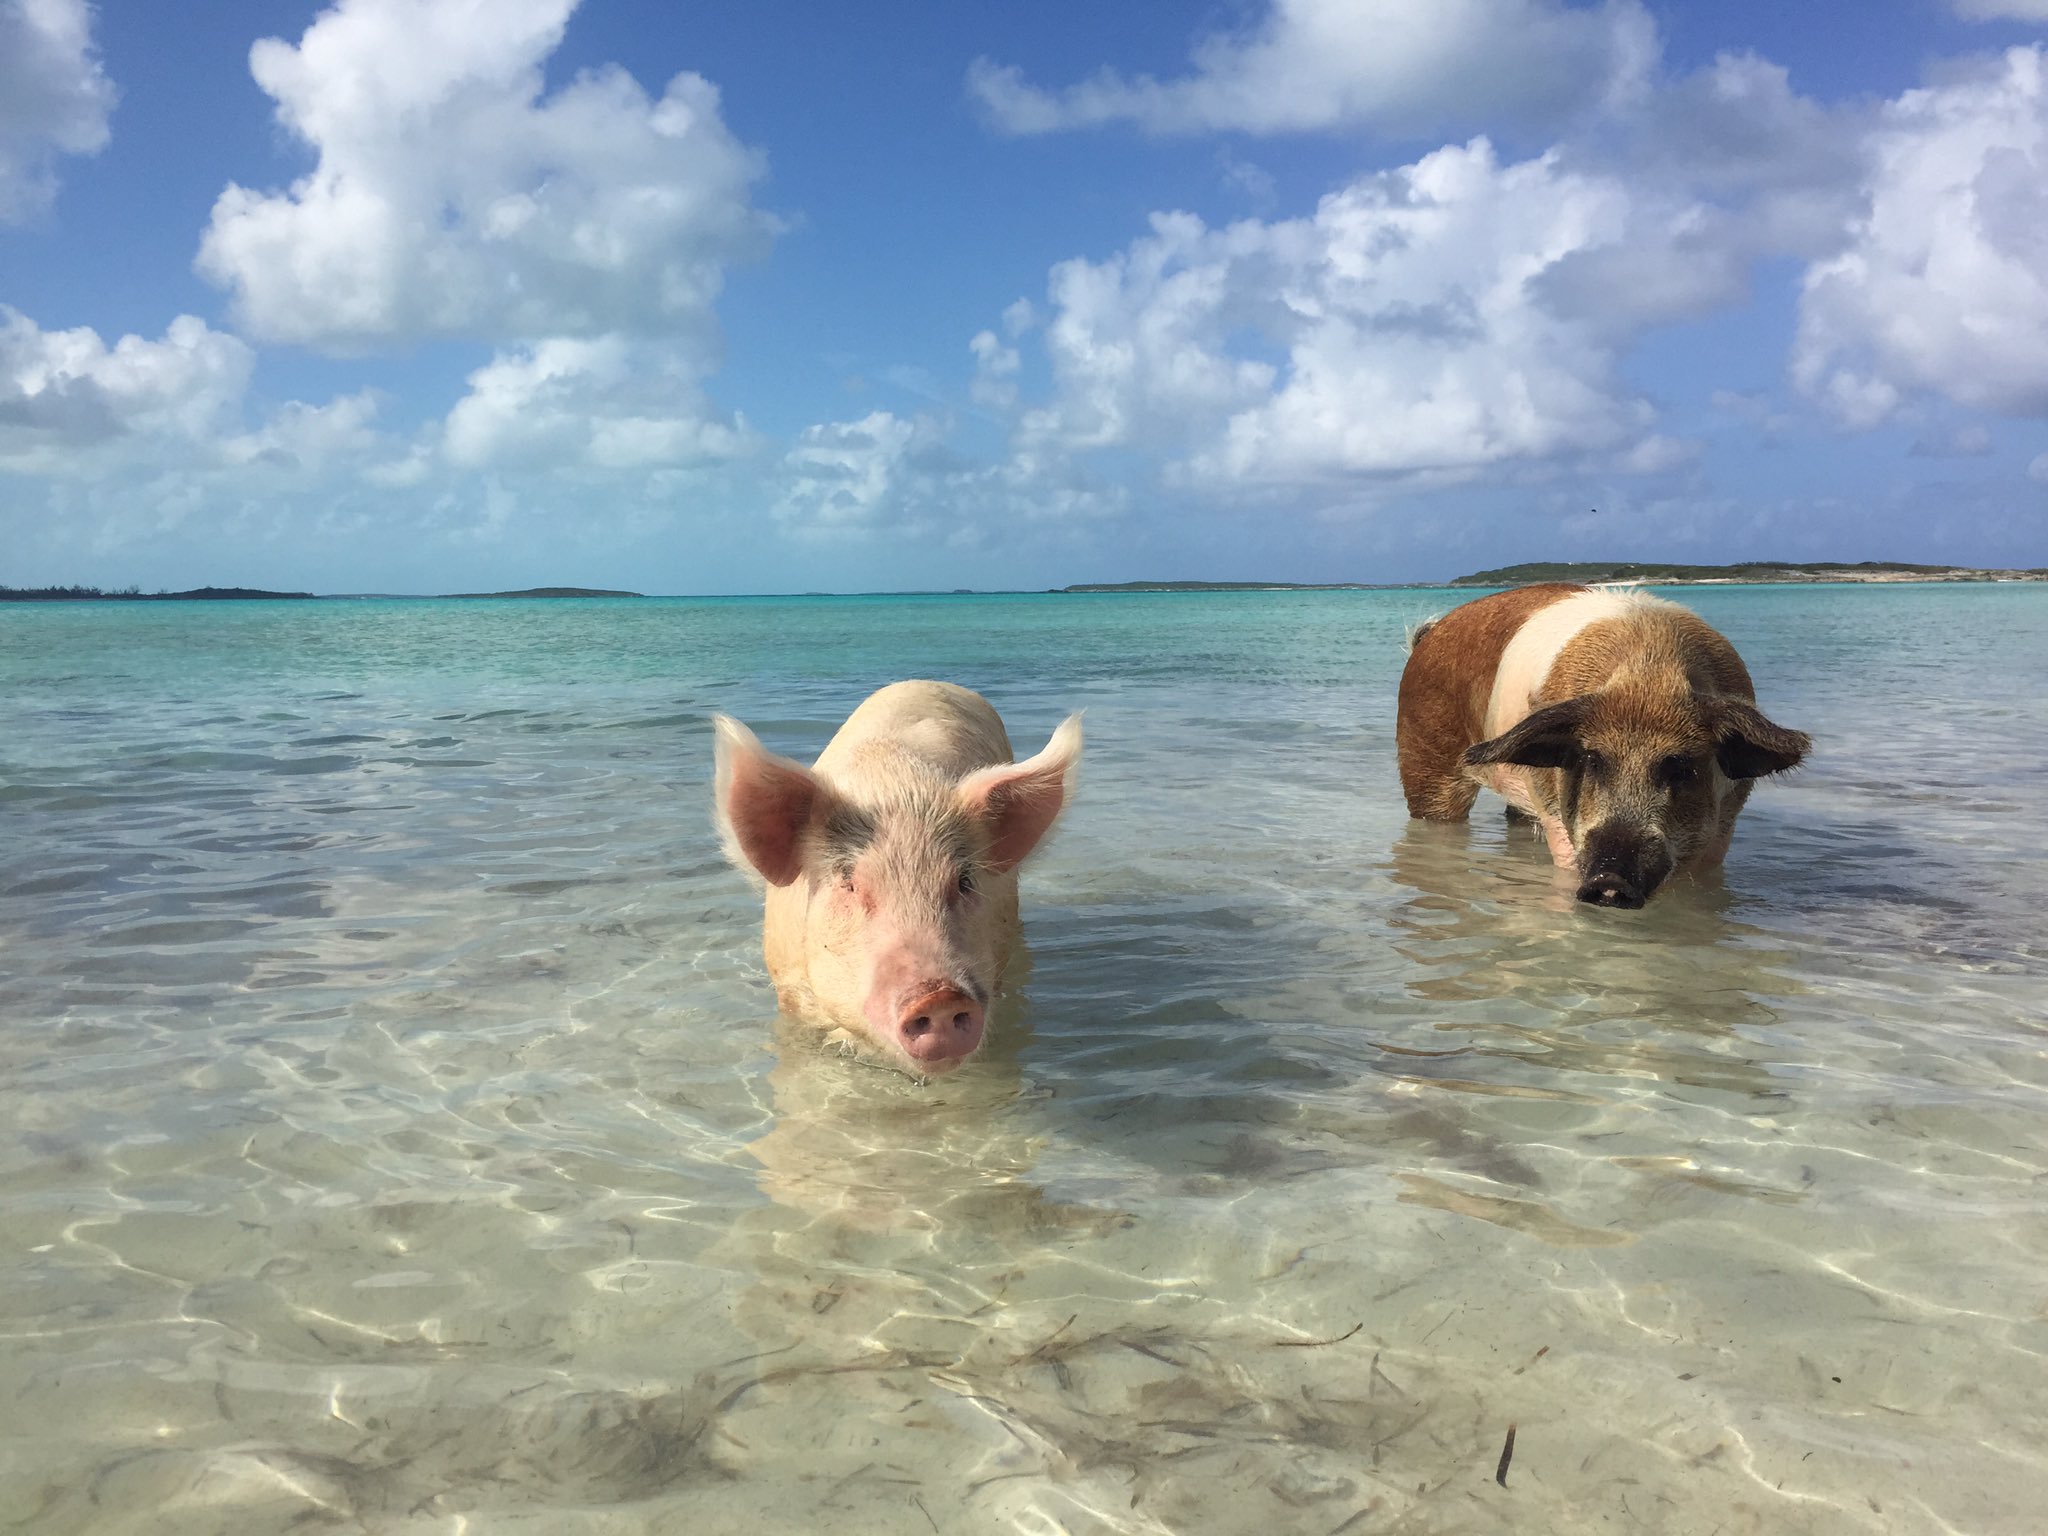 さわお 育休中 午後から半日のクルーズツアーに参加してきた 有名な豚が泳ぐビーチに来れたぞ いっぱいいたし 綺麗な海で泳ぐ 豚が見れて満足 さわ旅 バハマ 豚ビーチ T Co Grcpgkks Twitter